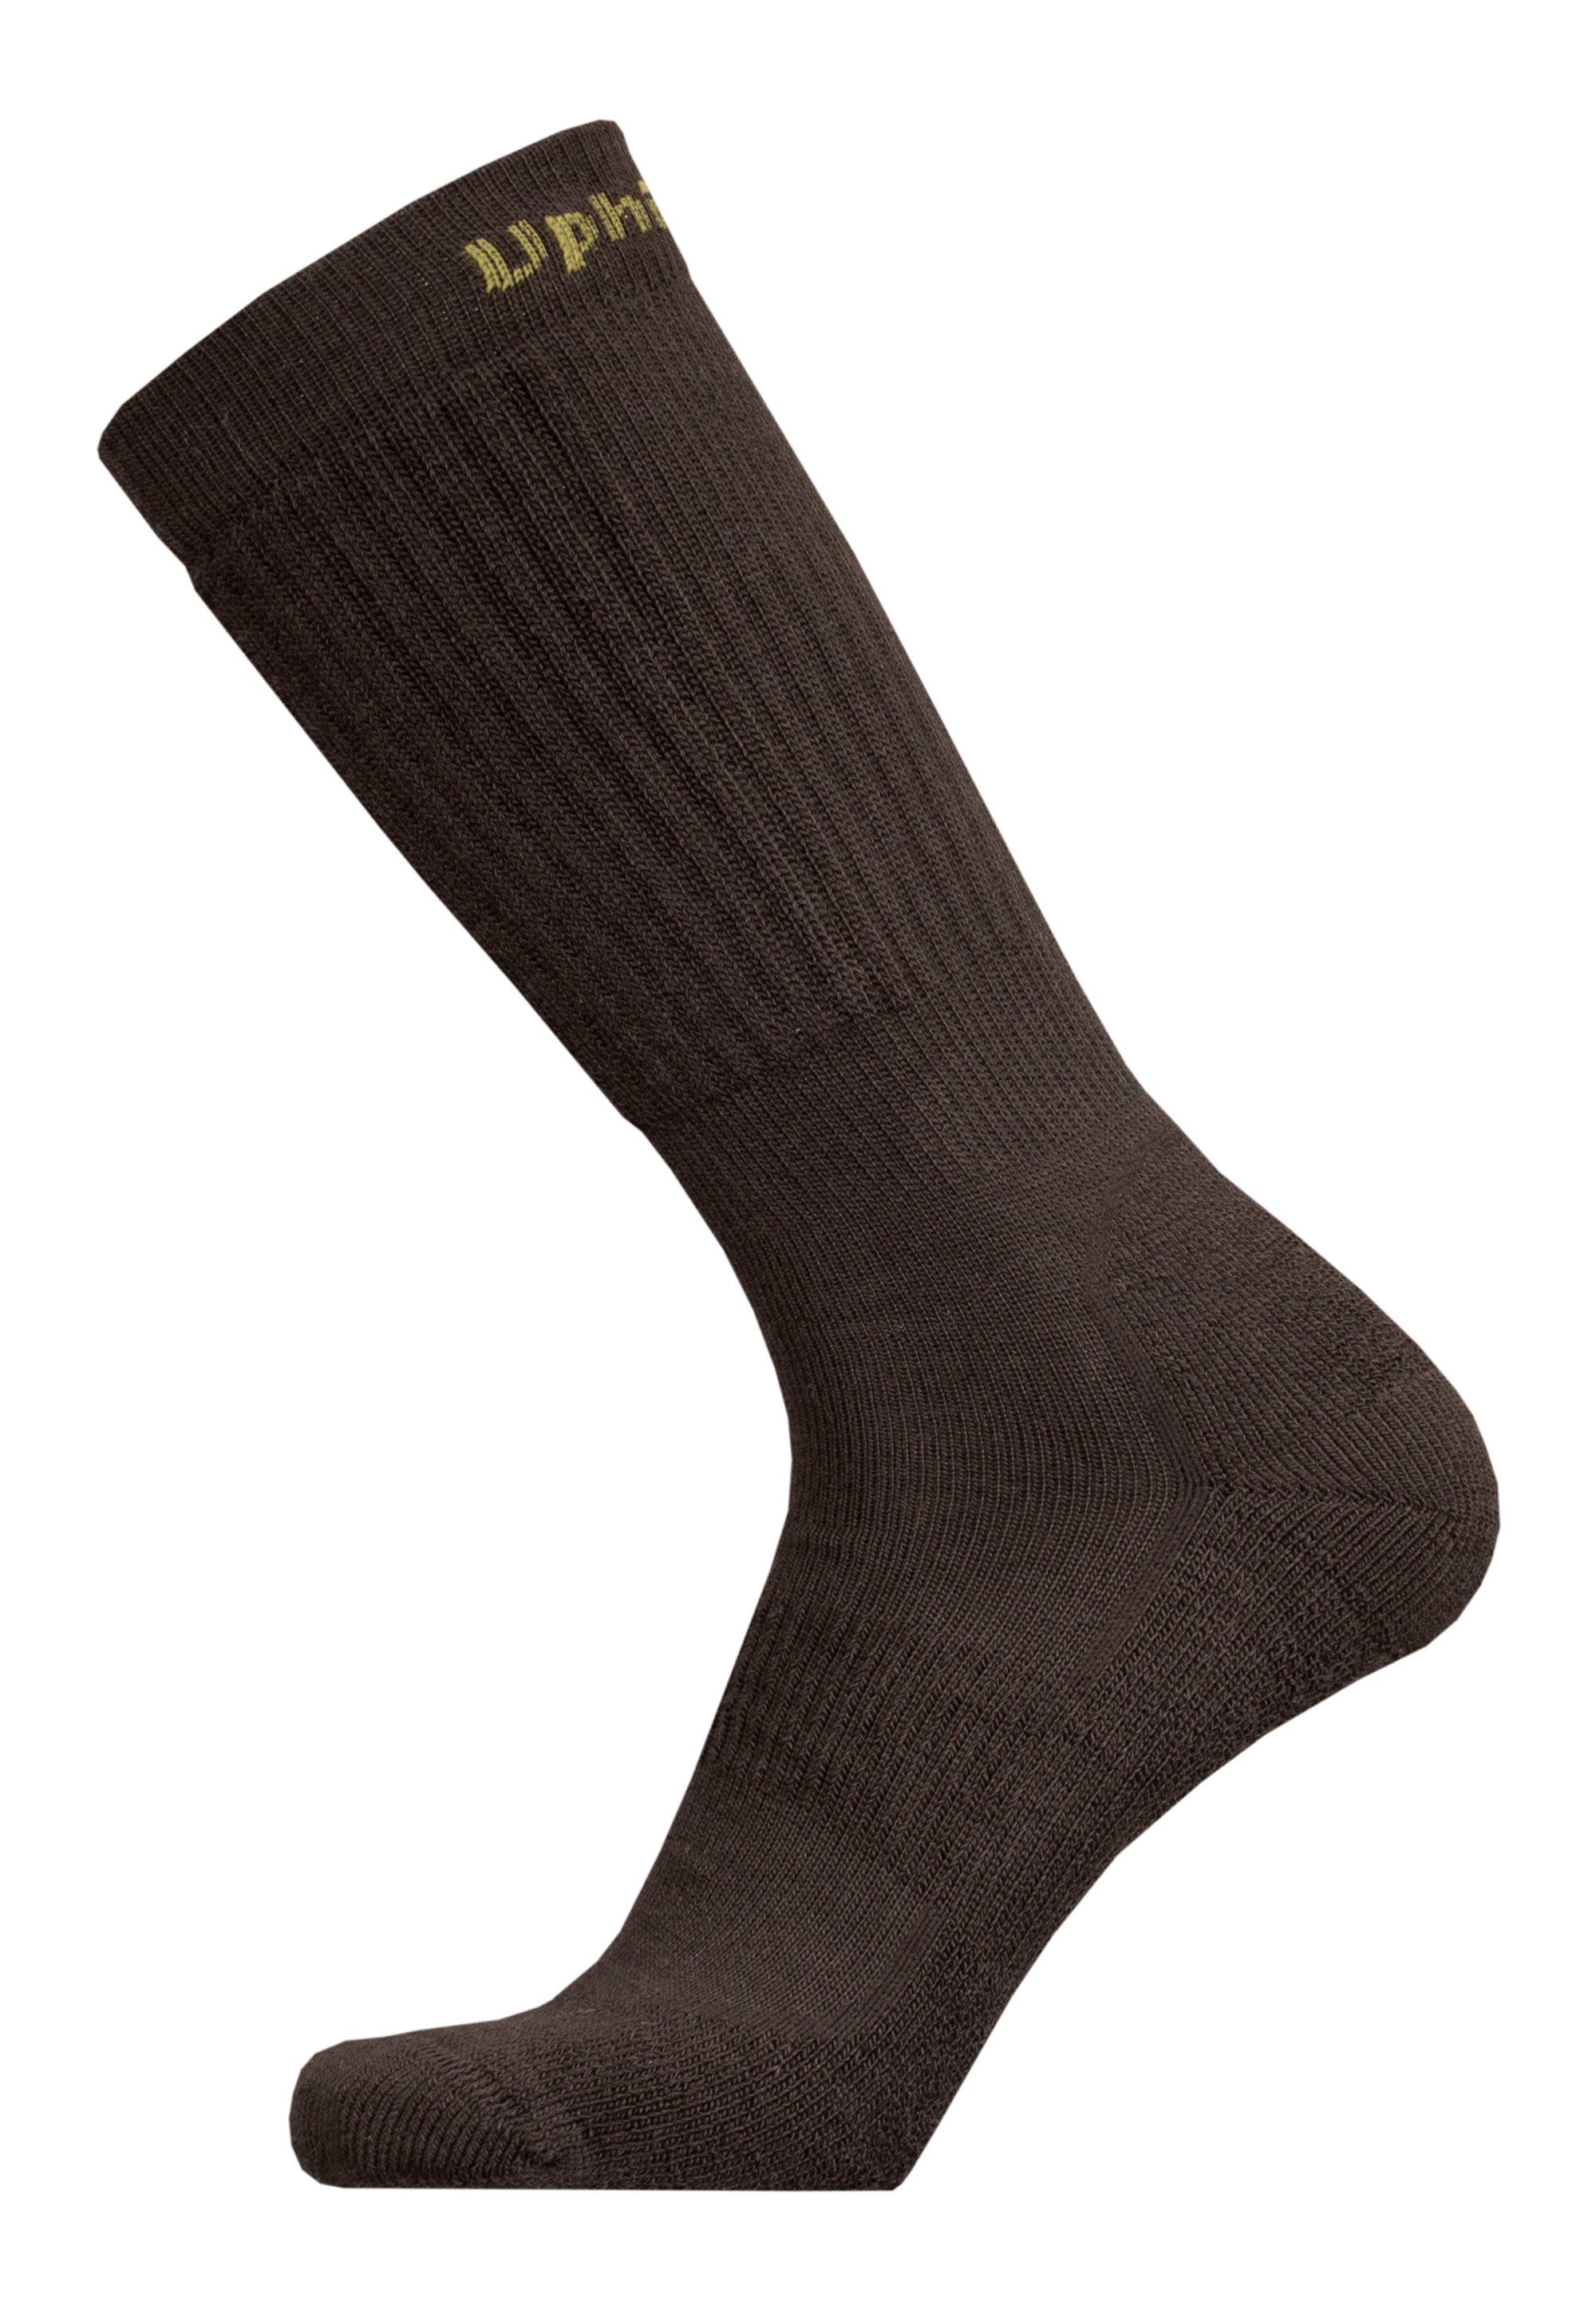 UphillSport Socken ROVA mit mehrlagiger Struktur schwarz